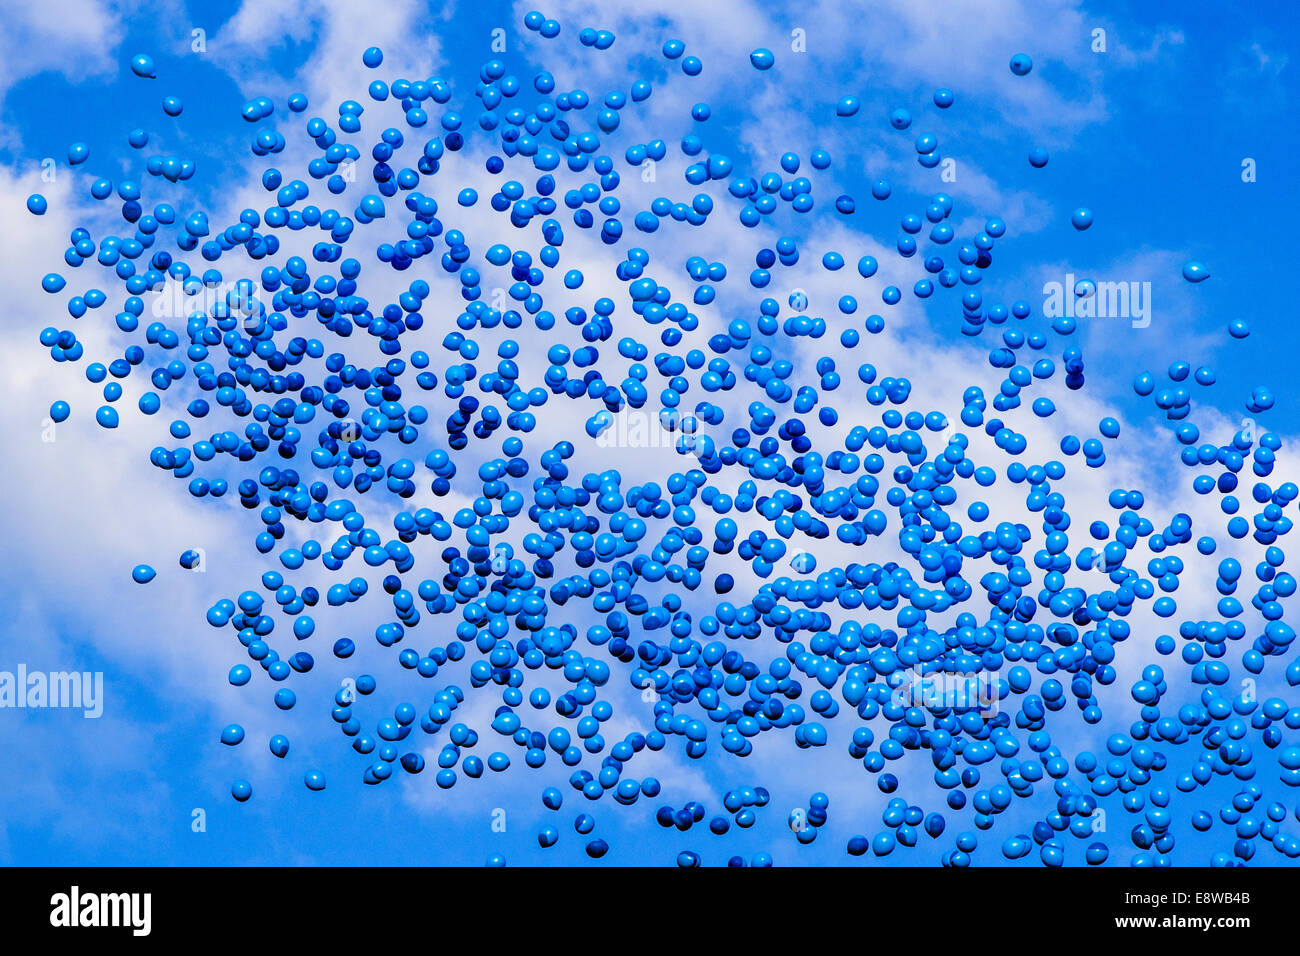 Rhapsody in Blue. Viele blaue Ballons in der Luft vor dem Hintergrund des blauen Himmel und weiße Wolken veröffentlicht Stockfoto